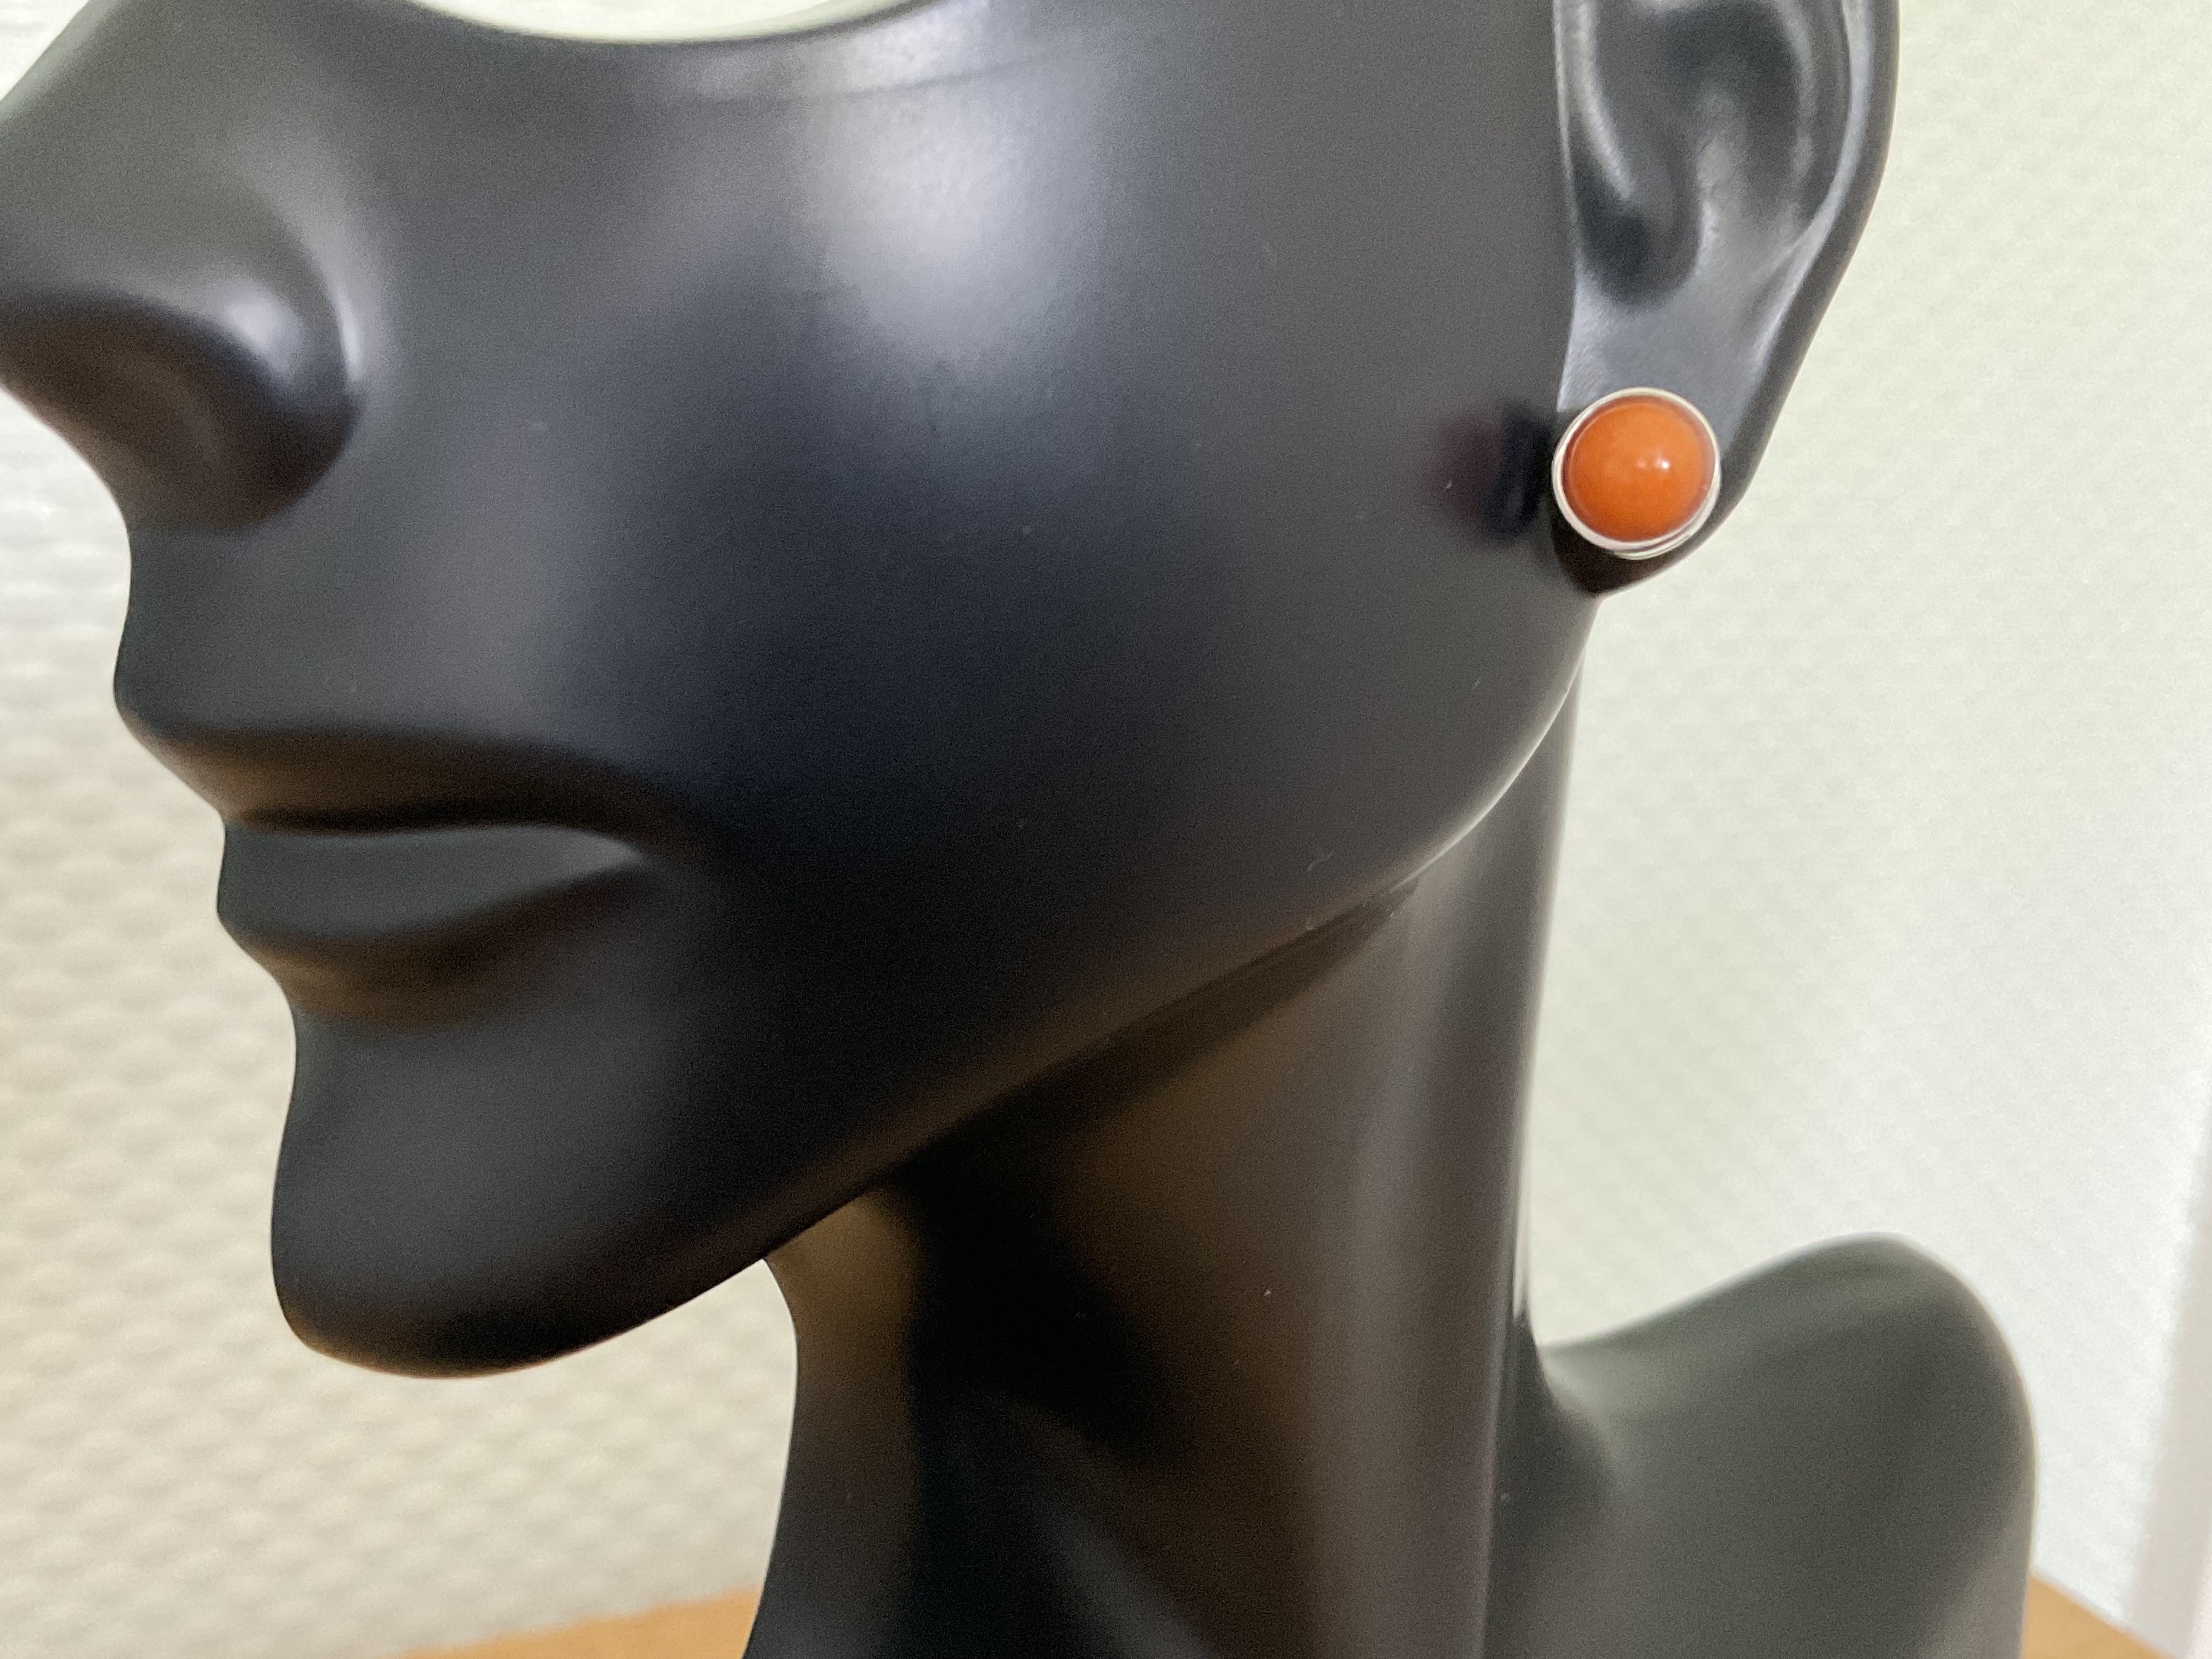 Orange Jade Gemstone Stud Earrings